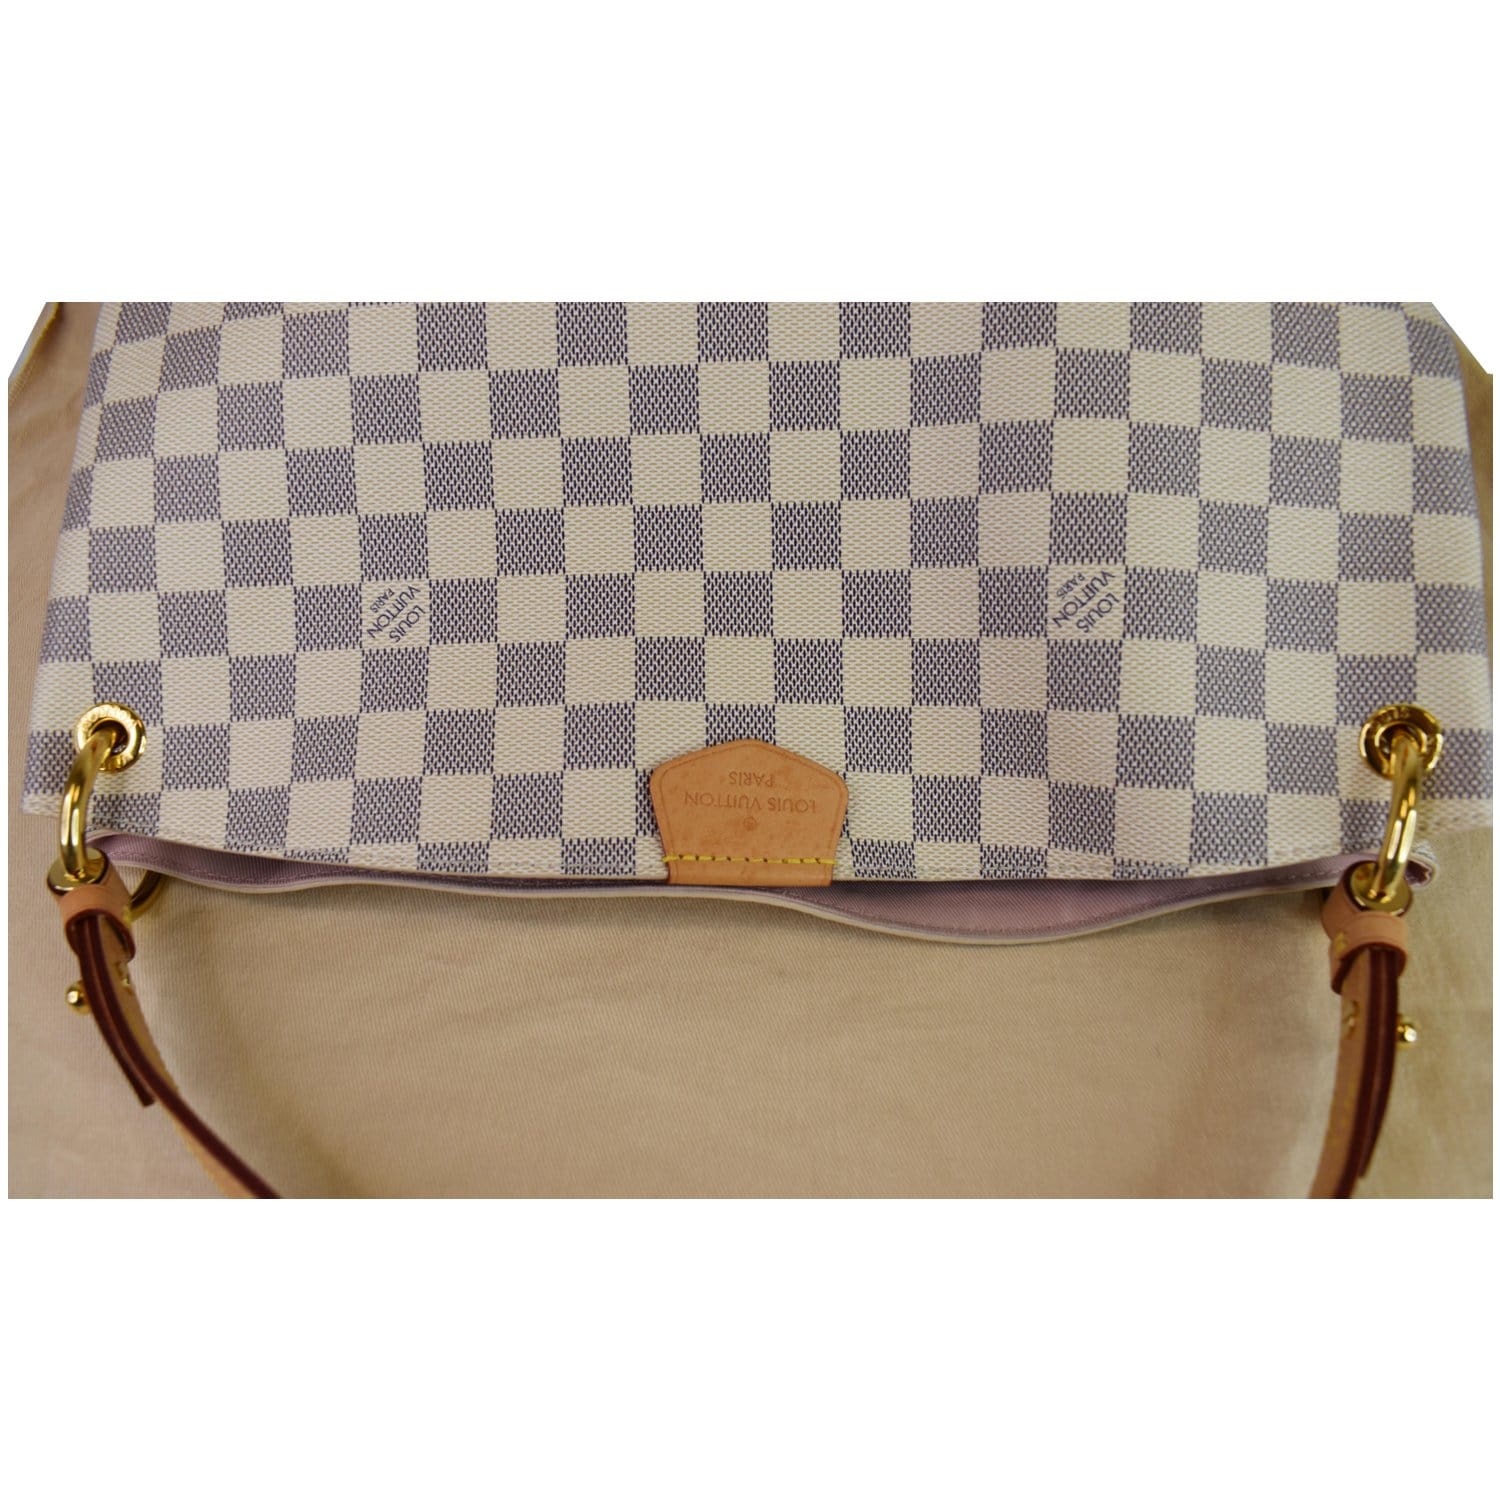 Graceful MM Damier Azur – Keeks Designer Handbags